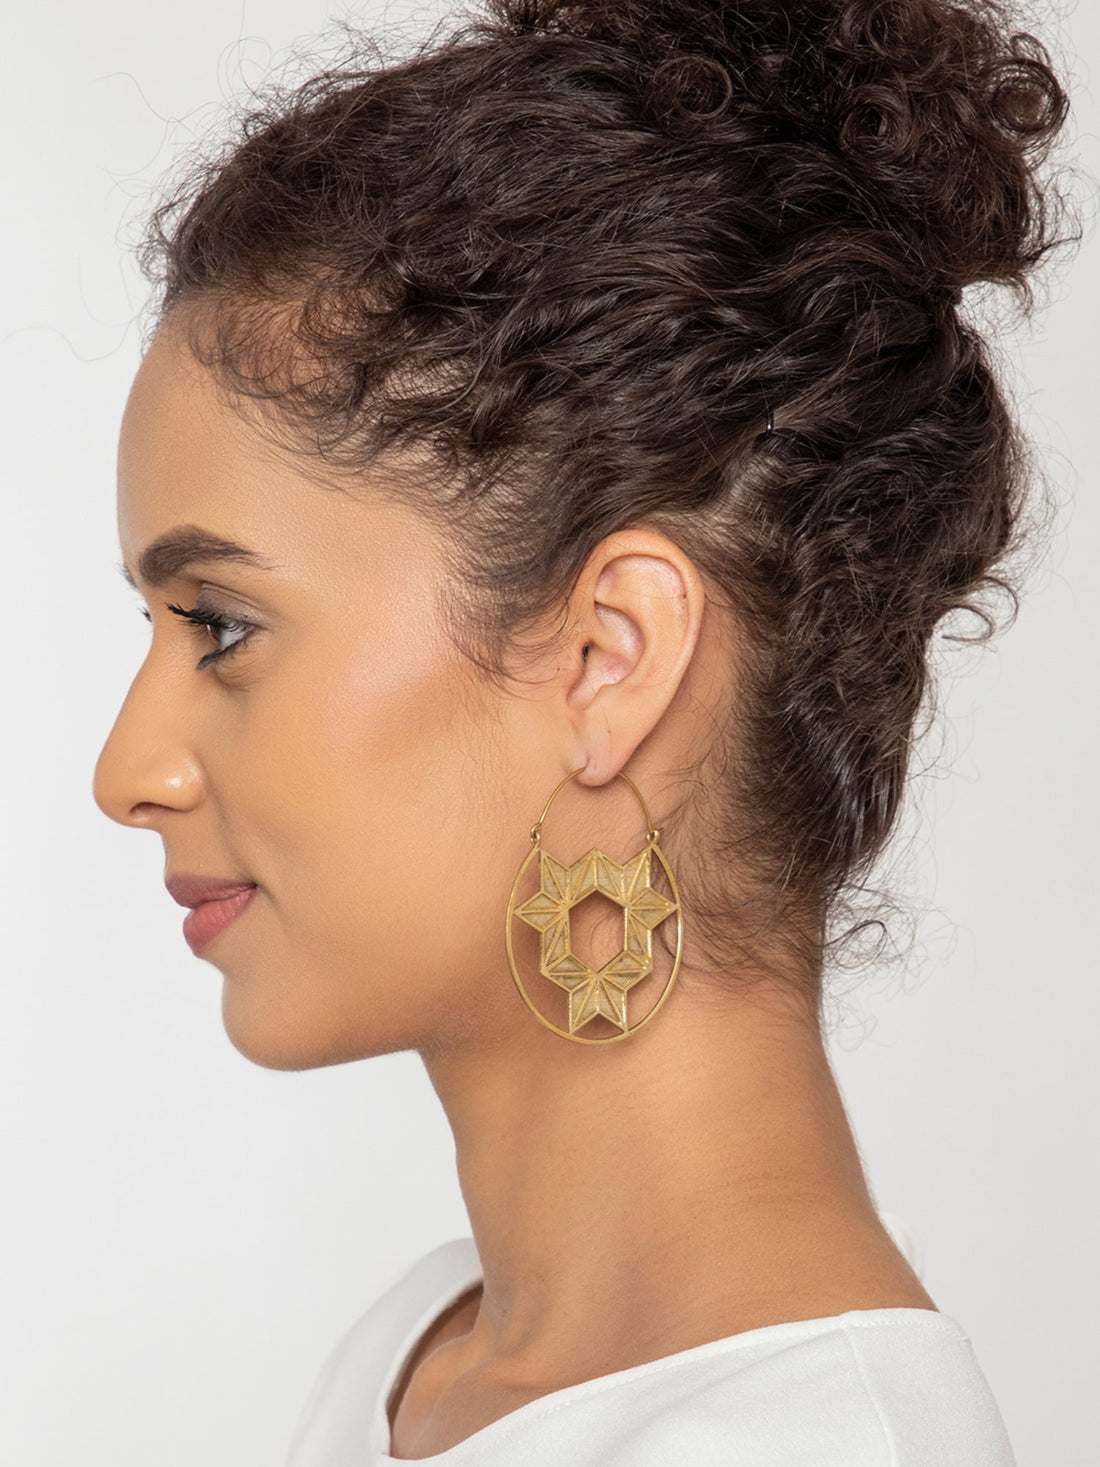 Party Wear Hoops Earrings - Statement Gold-Plated Brass Earrings By Studio One Love